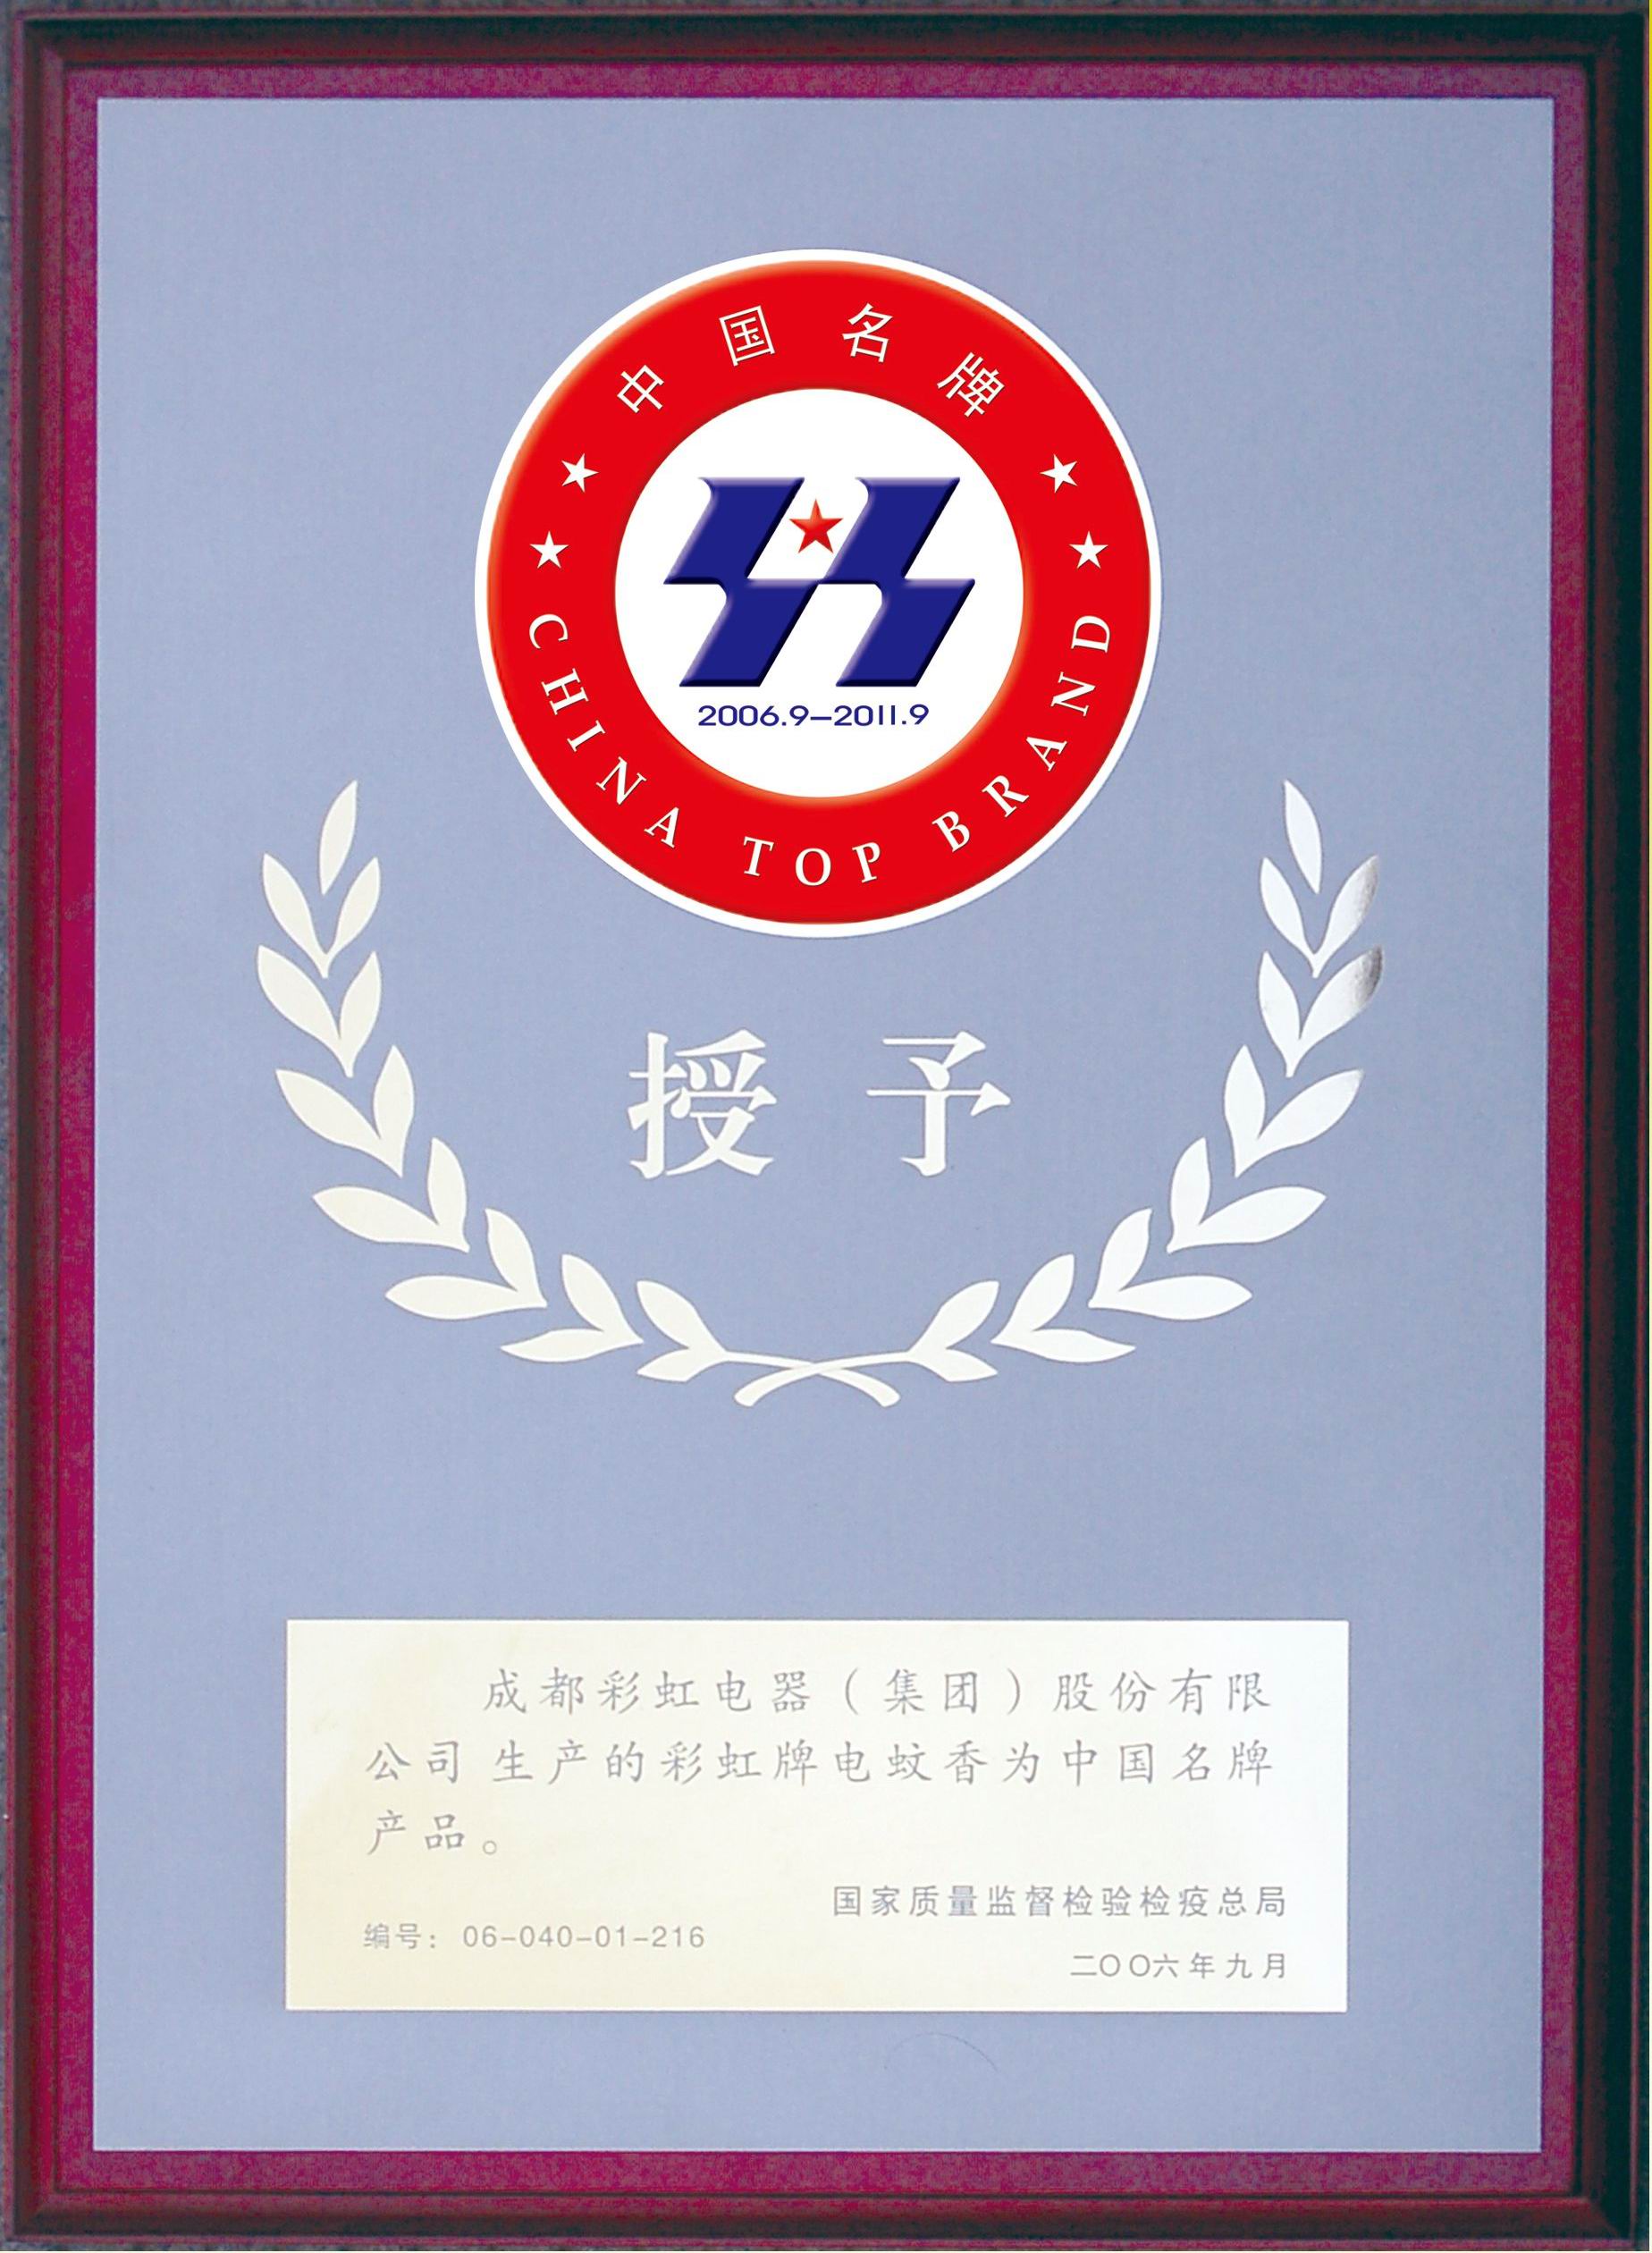 彩虹牌电蚊香被评为中国名牌产品